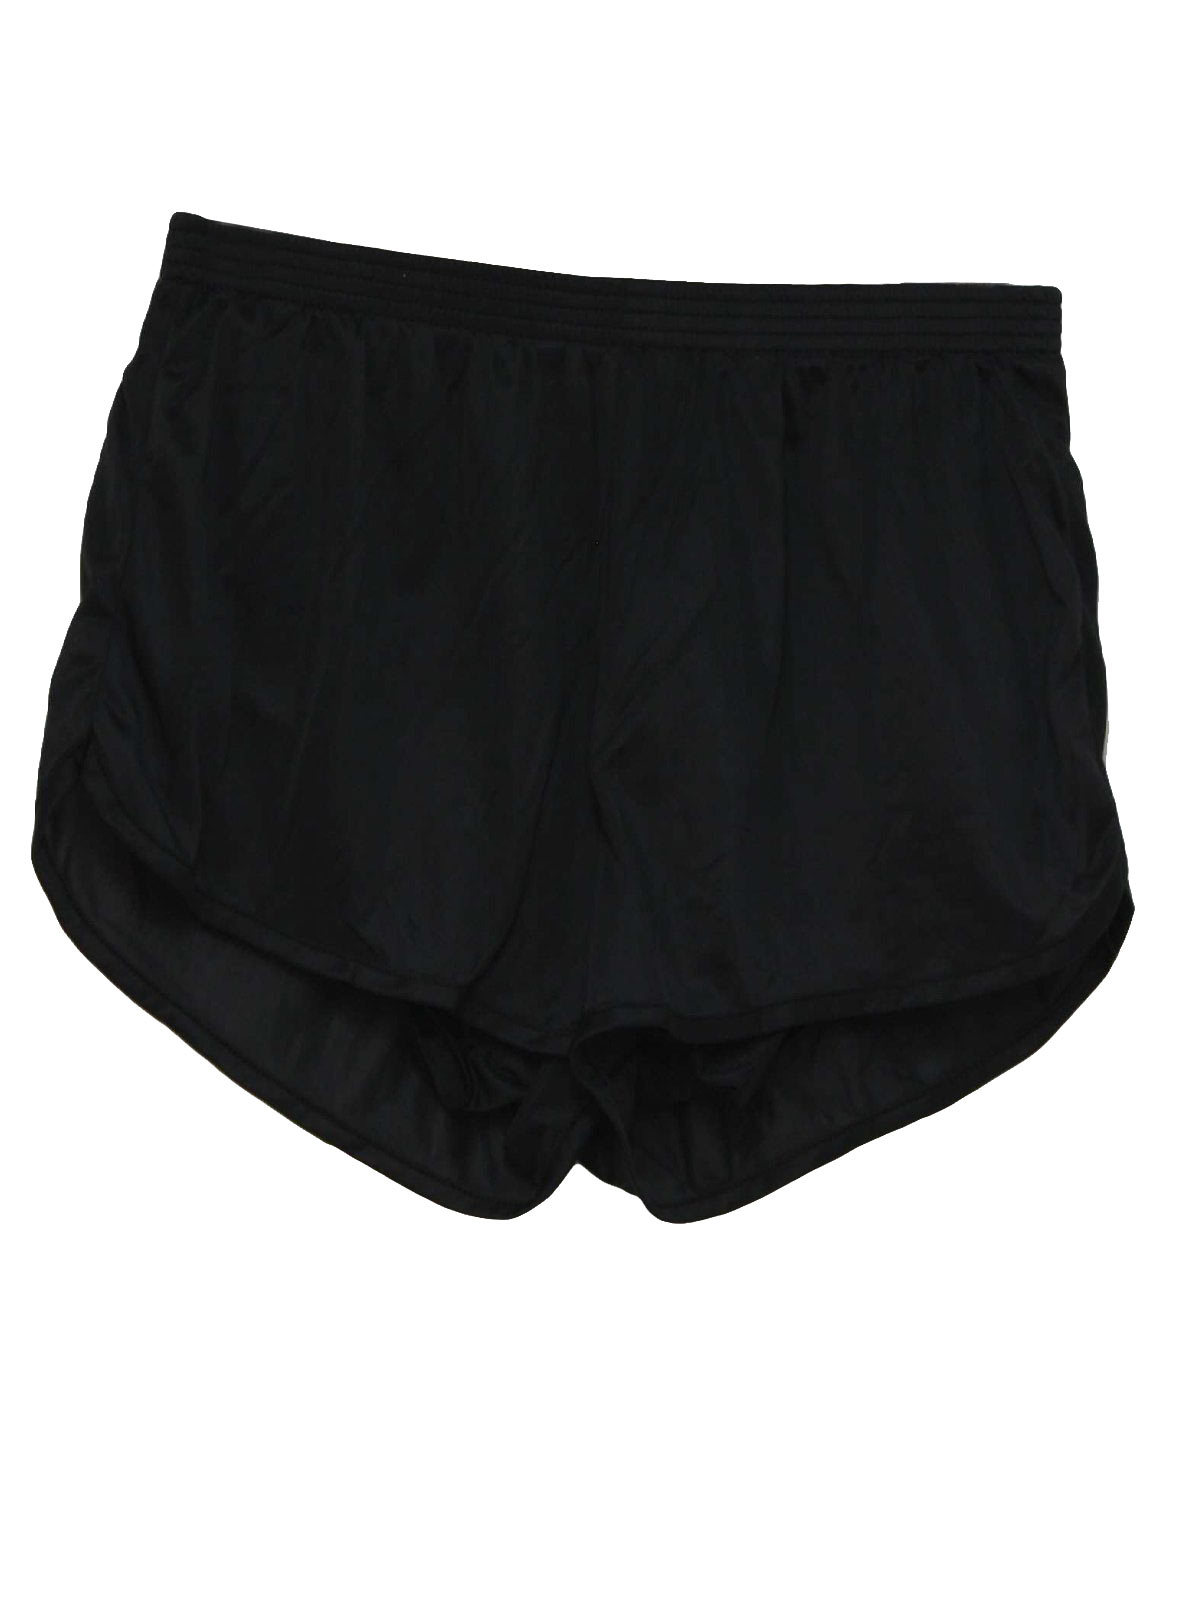 80s Retro Shorts: 80s -Soffe- Mens black nylon elastic waist totally ...